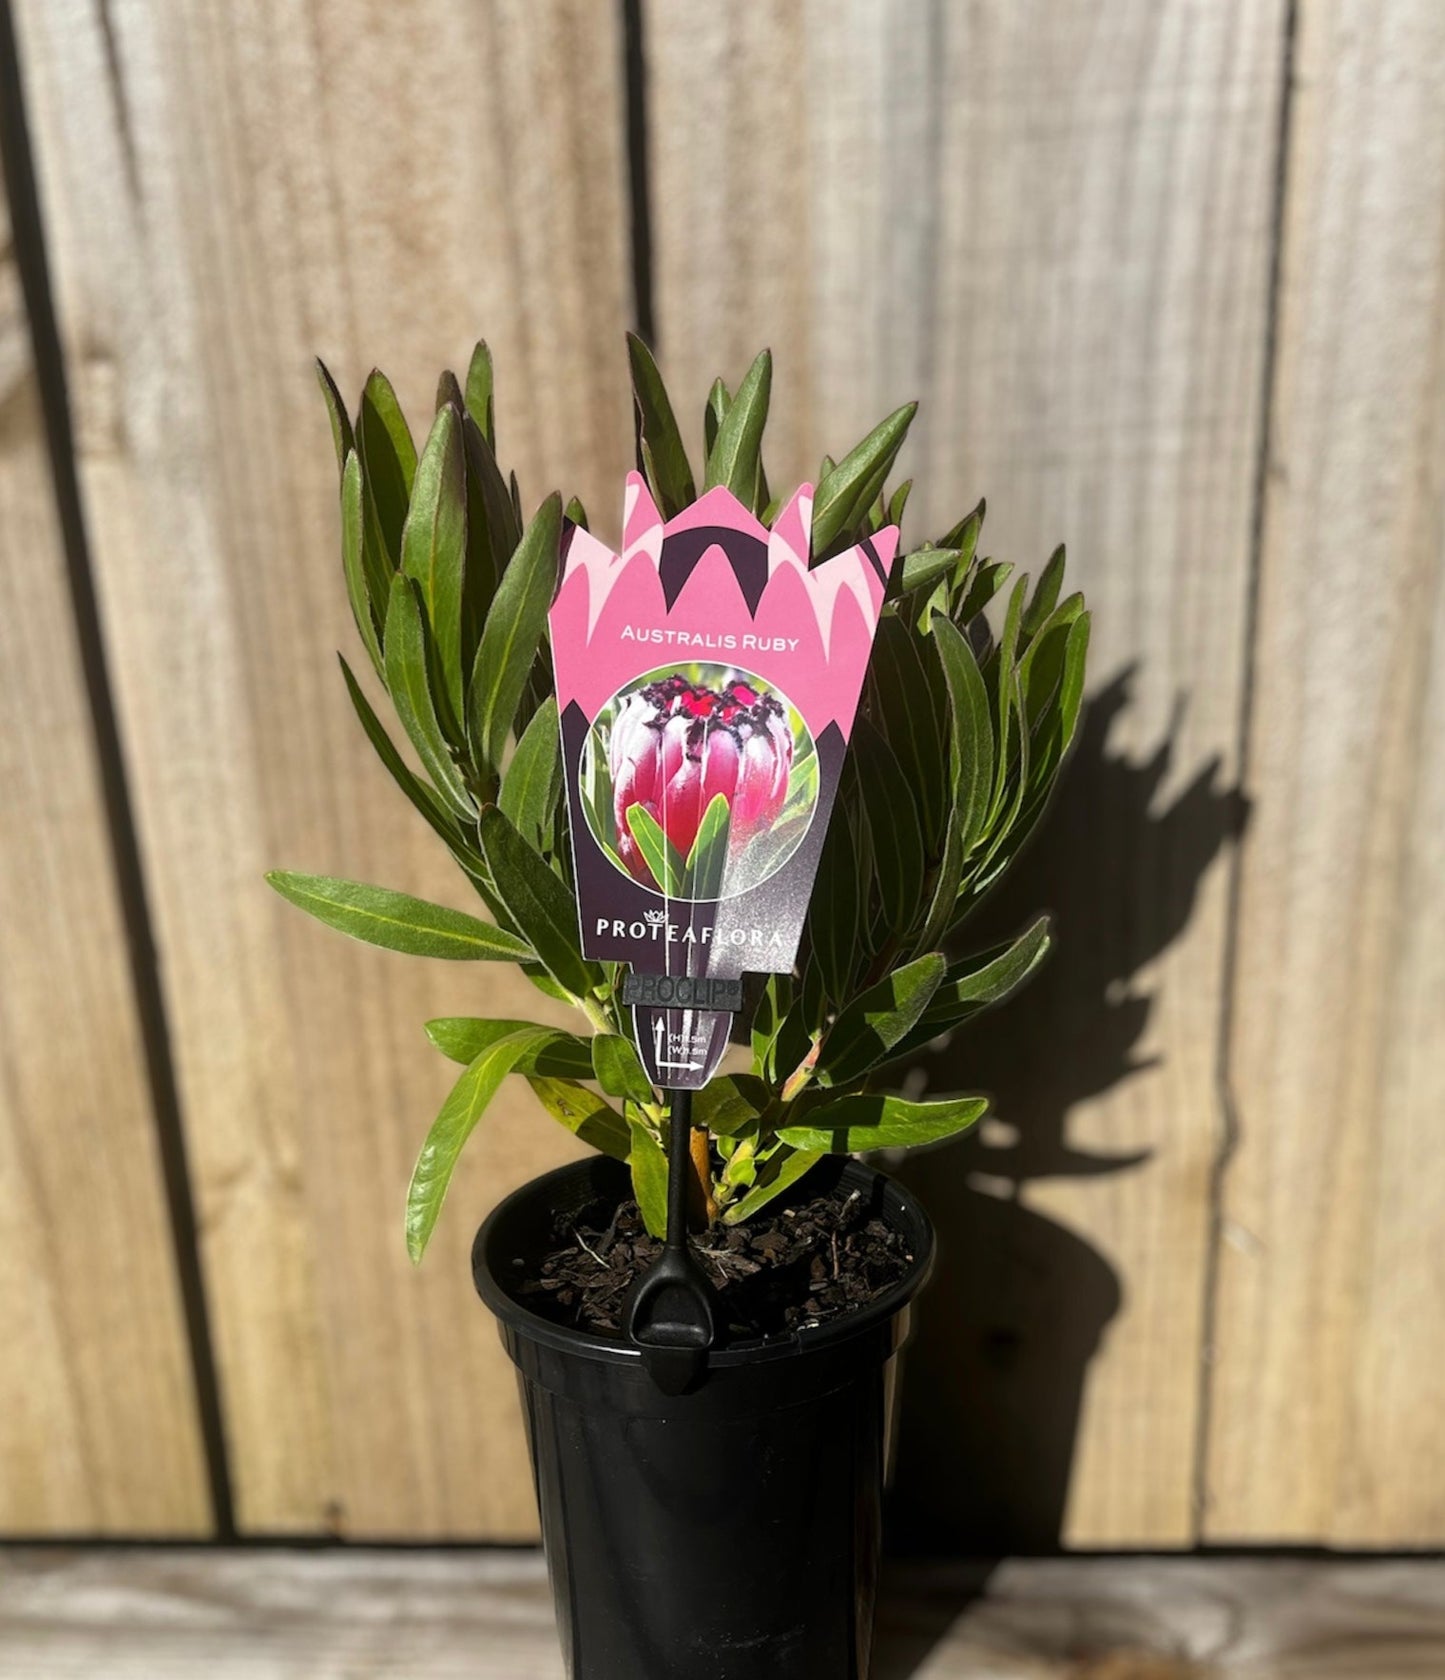 Protea neriifolia 'Australis Ruby' 14cm